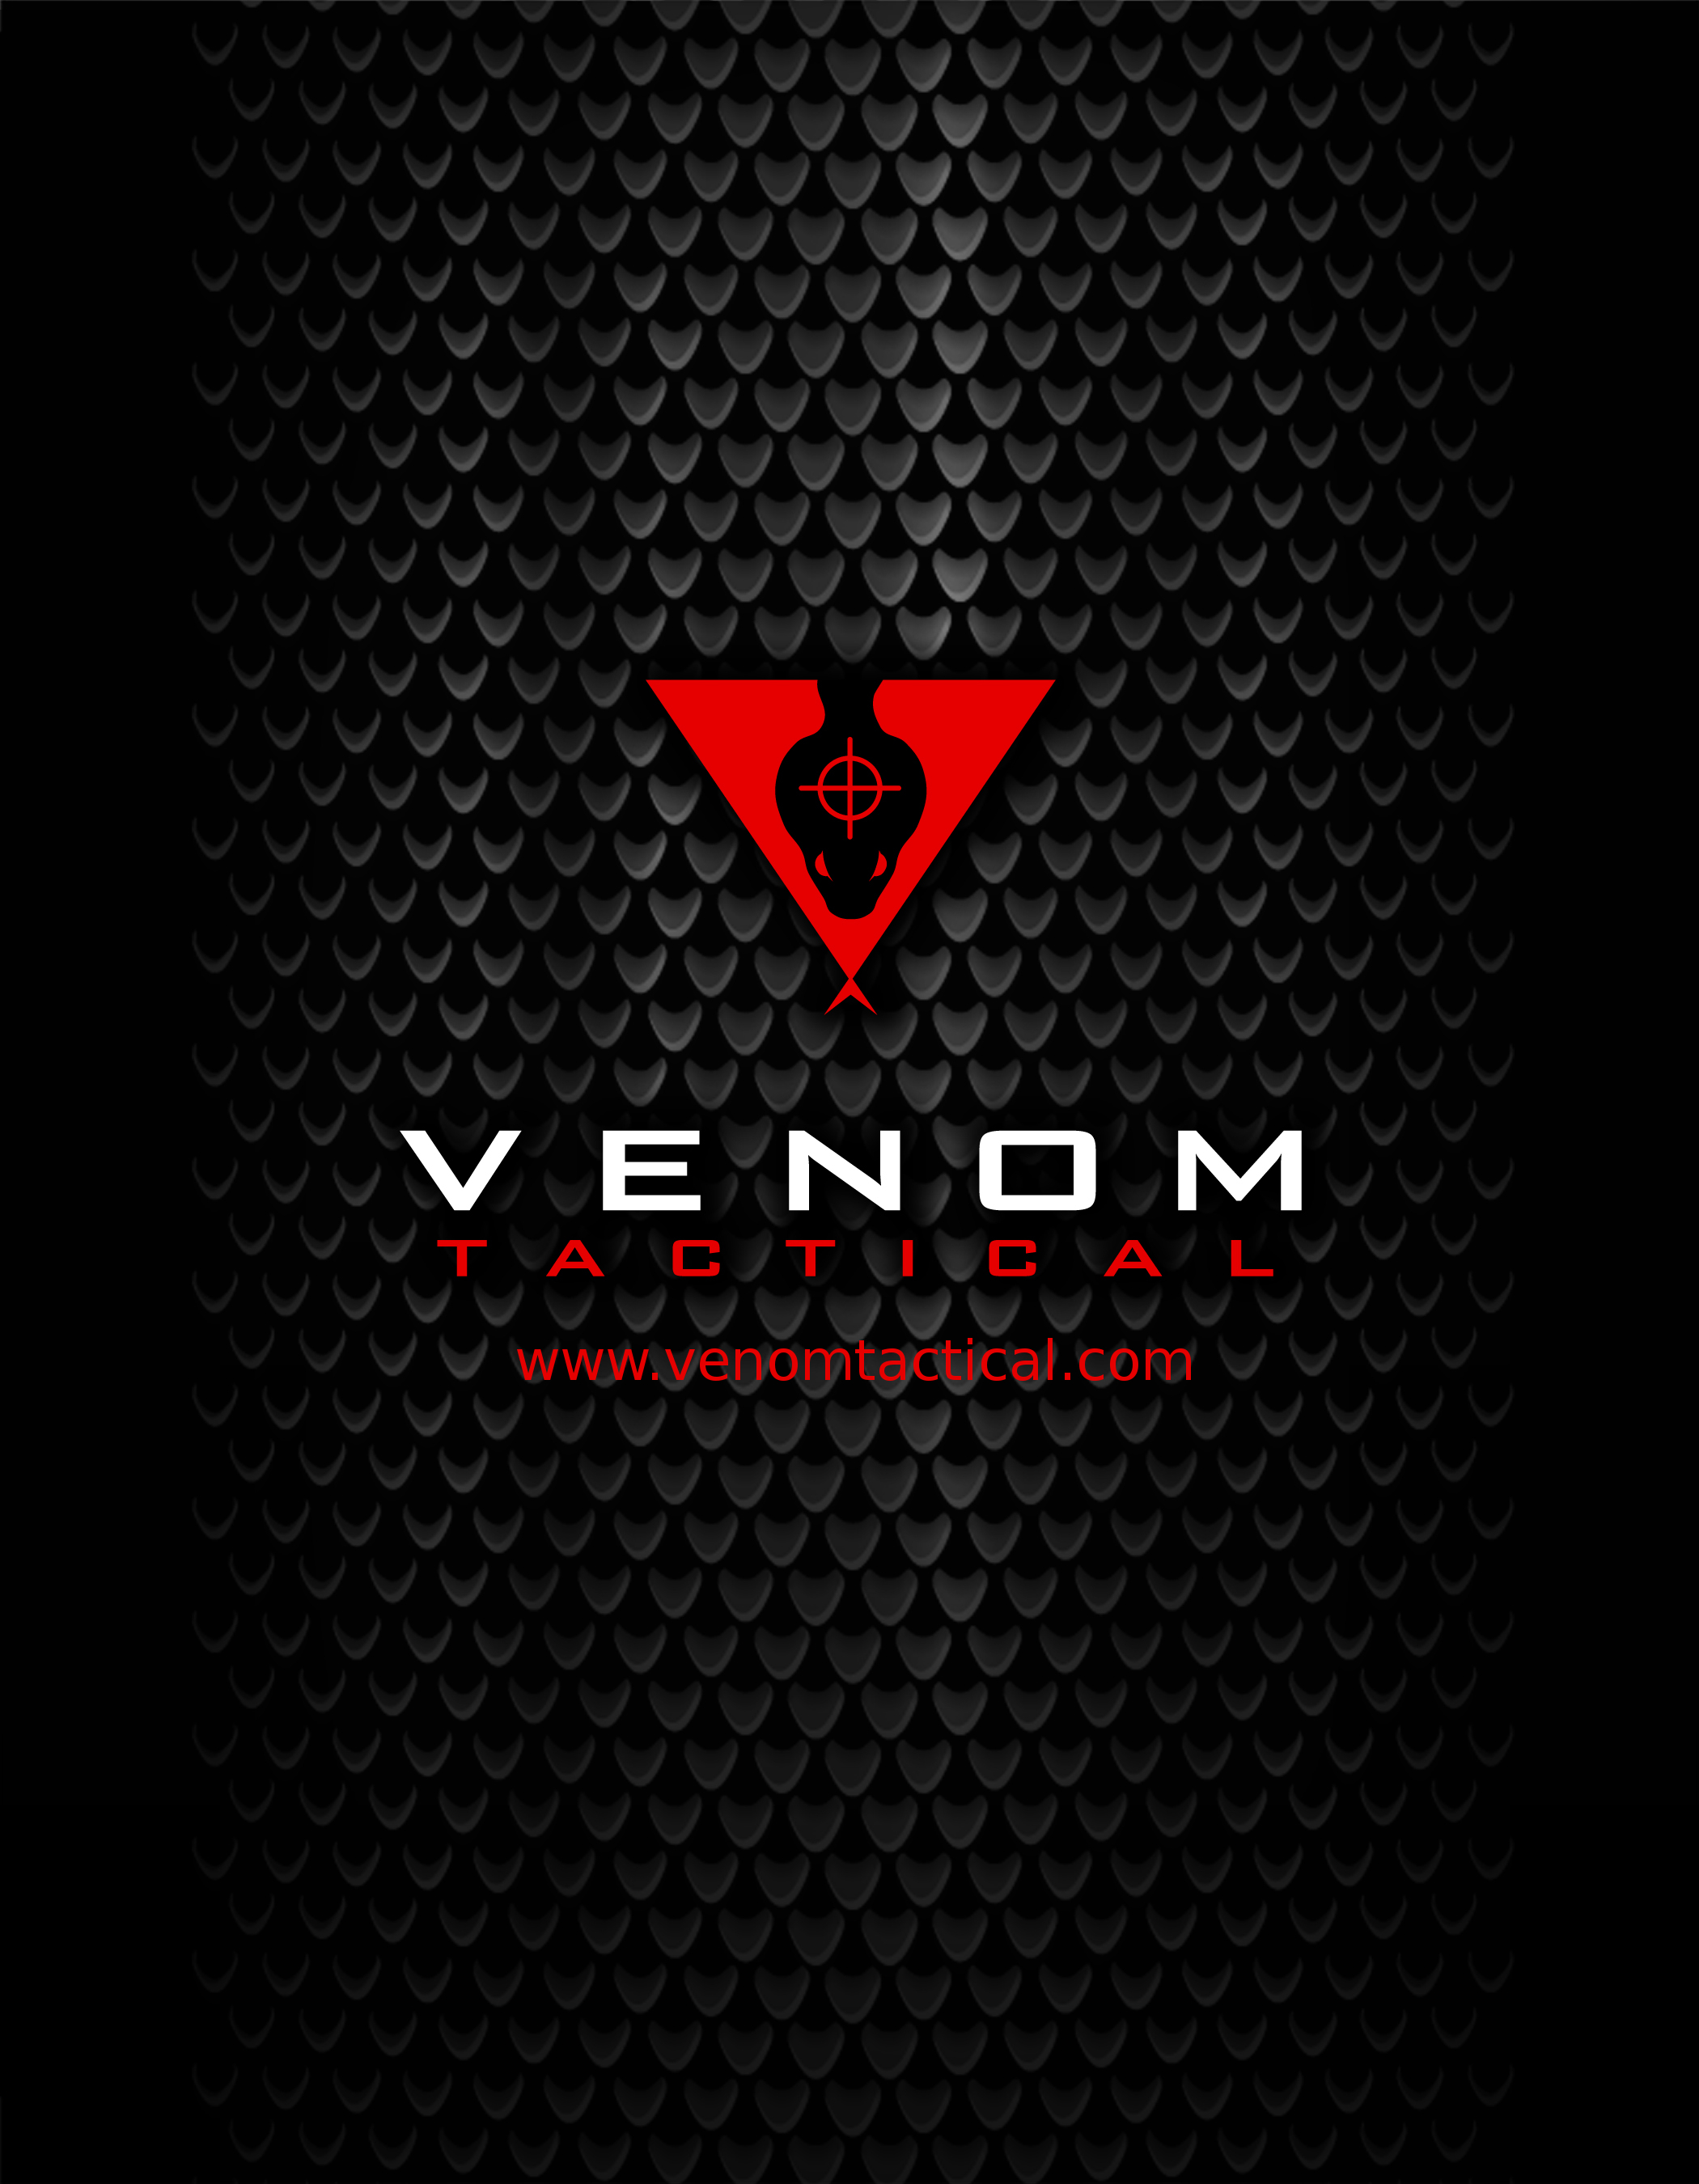 Venom Energy Logo